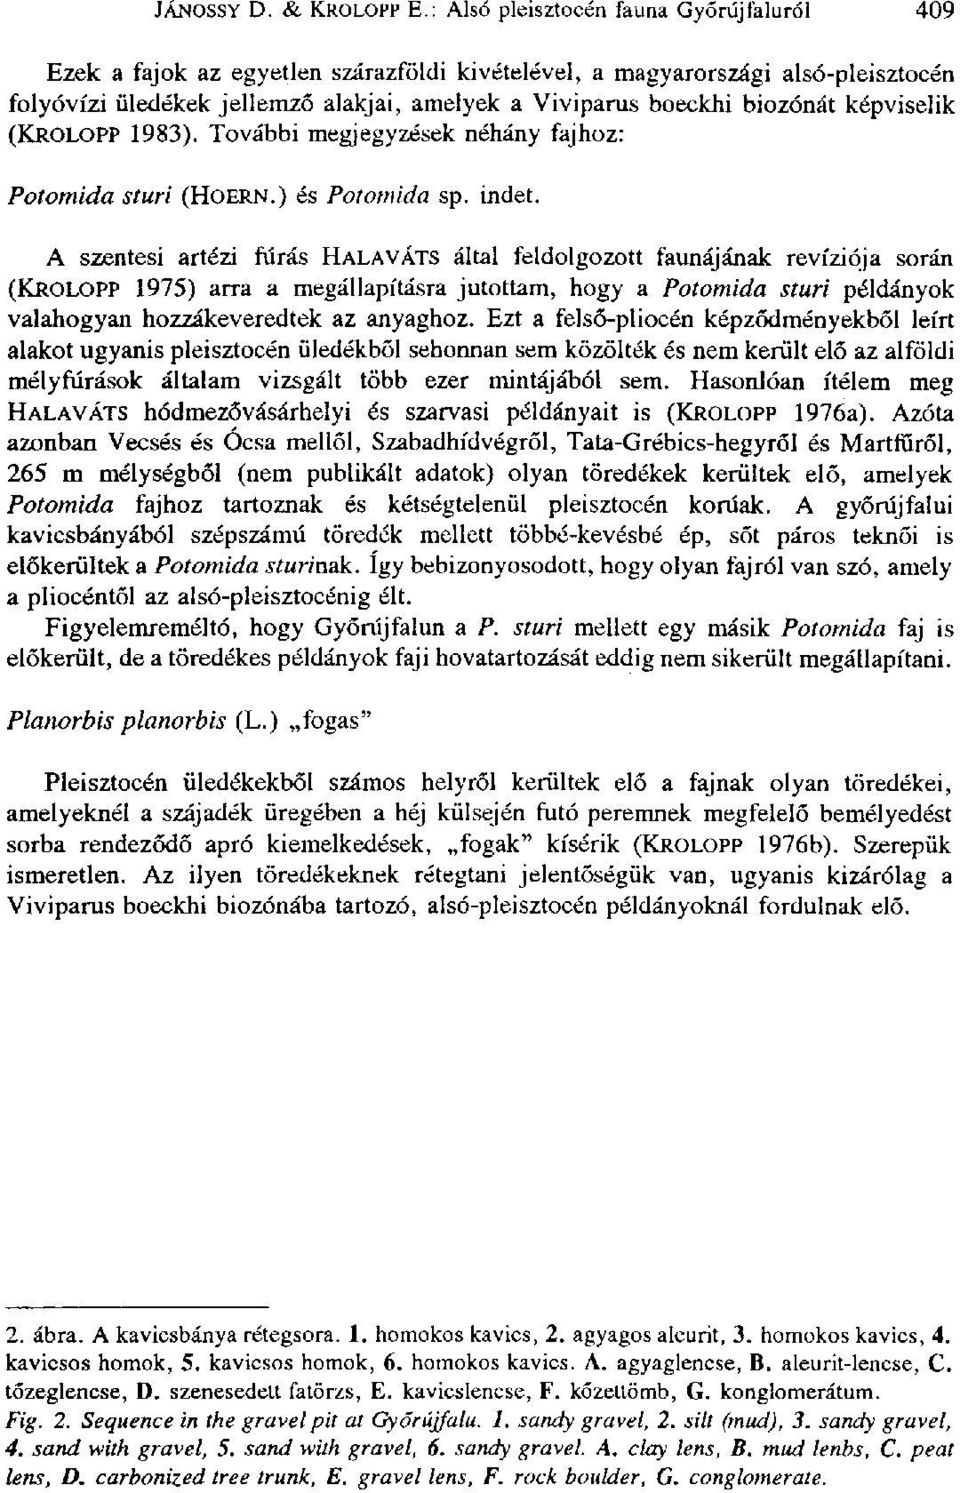 képviselik (KROLOPP 1983). További megjegyzések néhány fajhoz: Potomida sturi (HOERN.) és Potomida sp. indet.